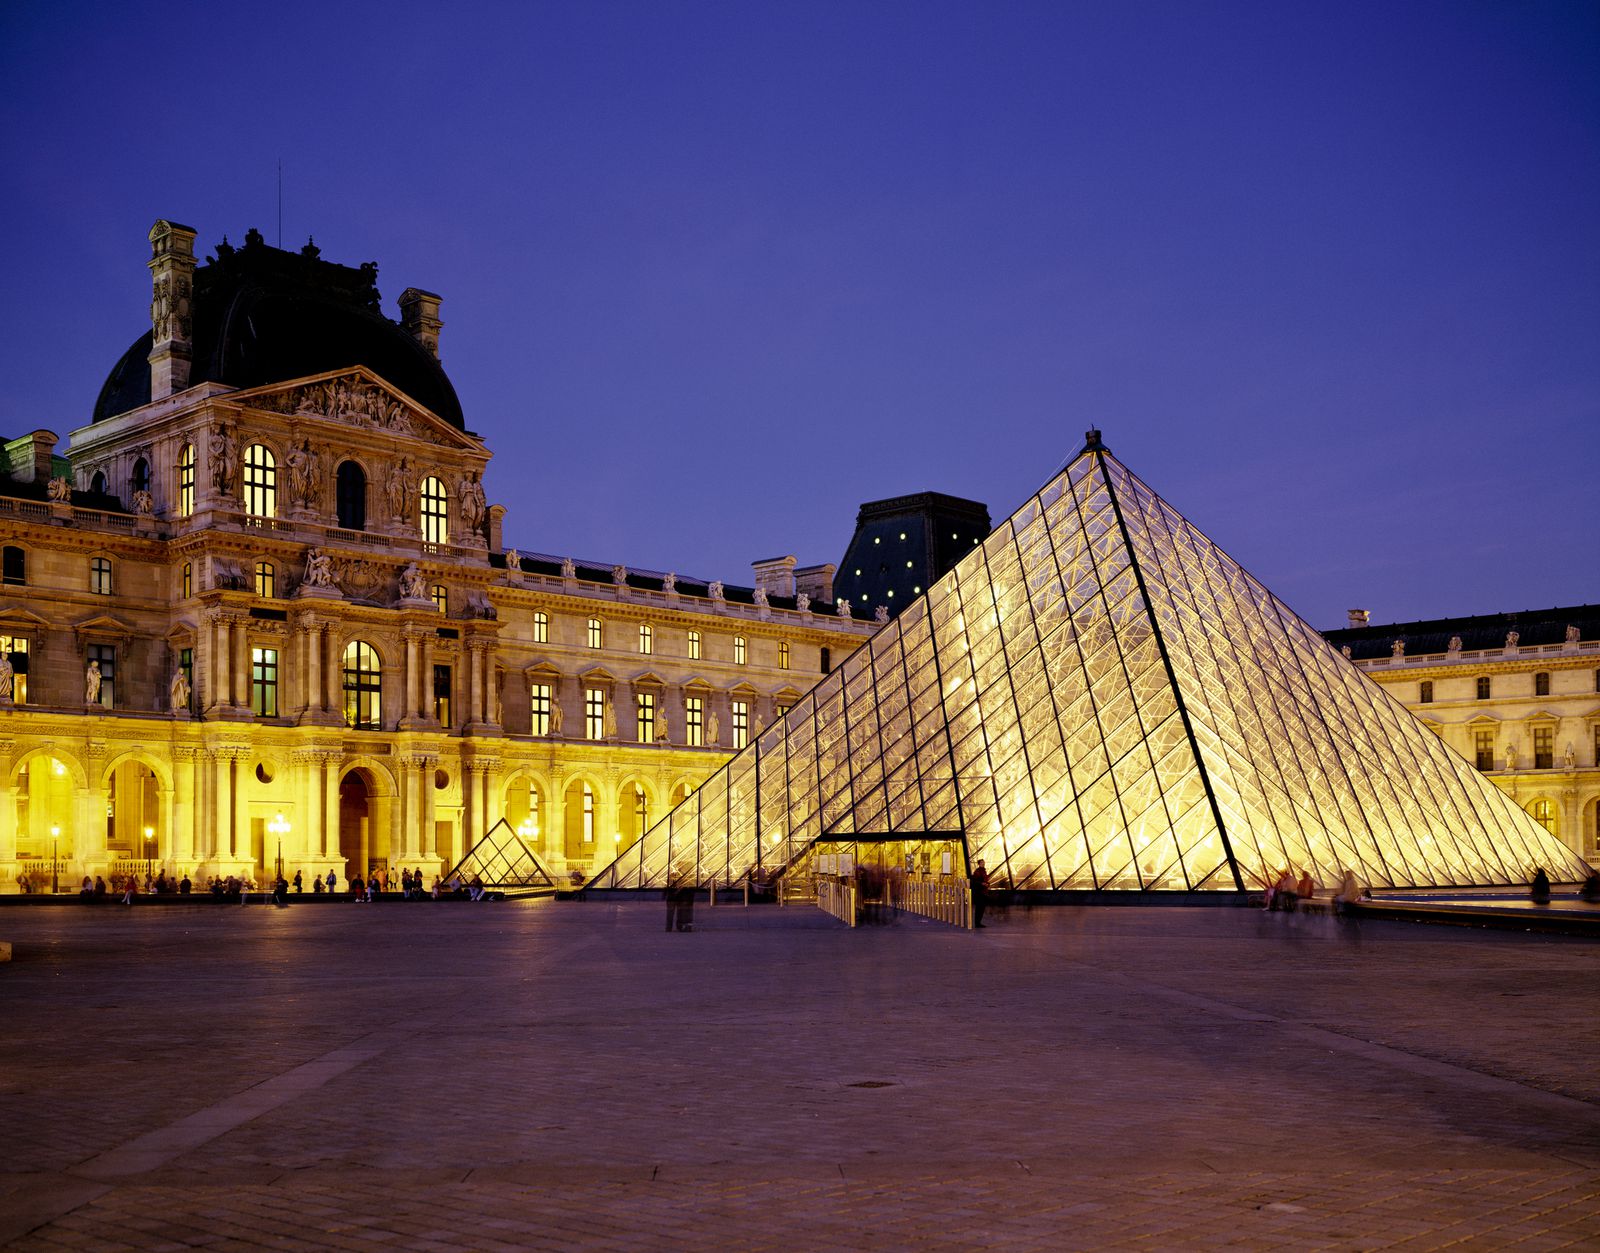 世界の美が集う憧れの場所 パリのルーブル美術館でしたい5つのこと Retrip リトリップ